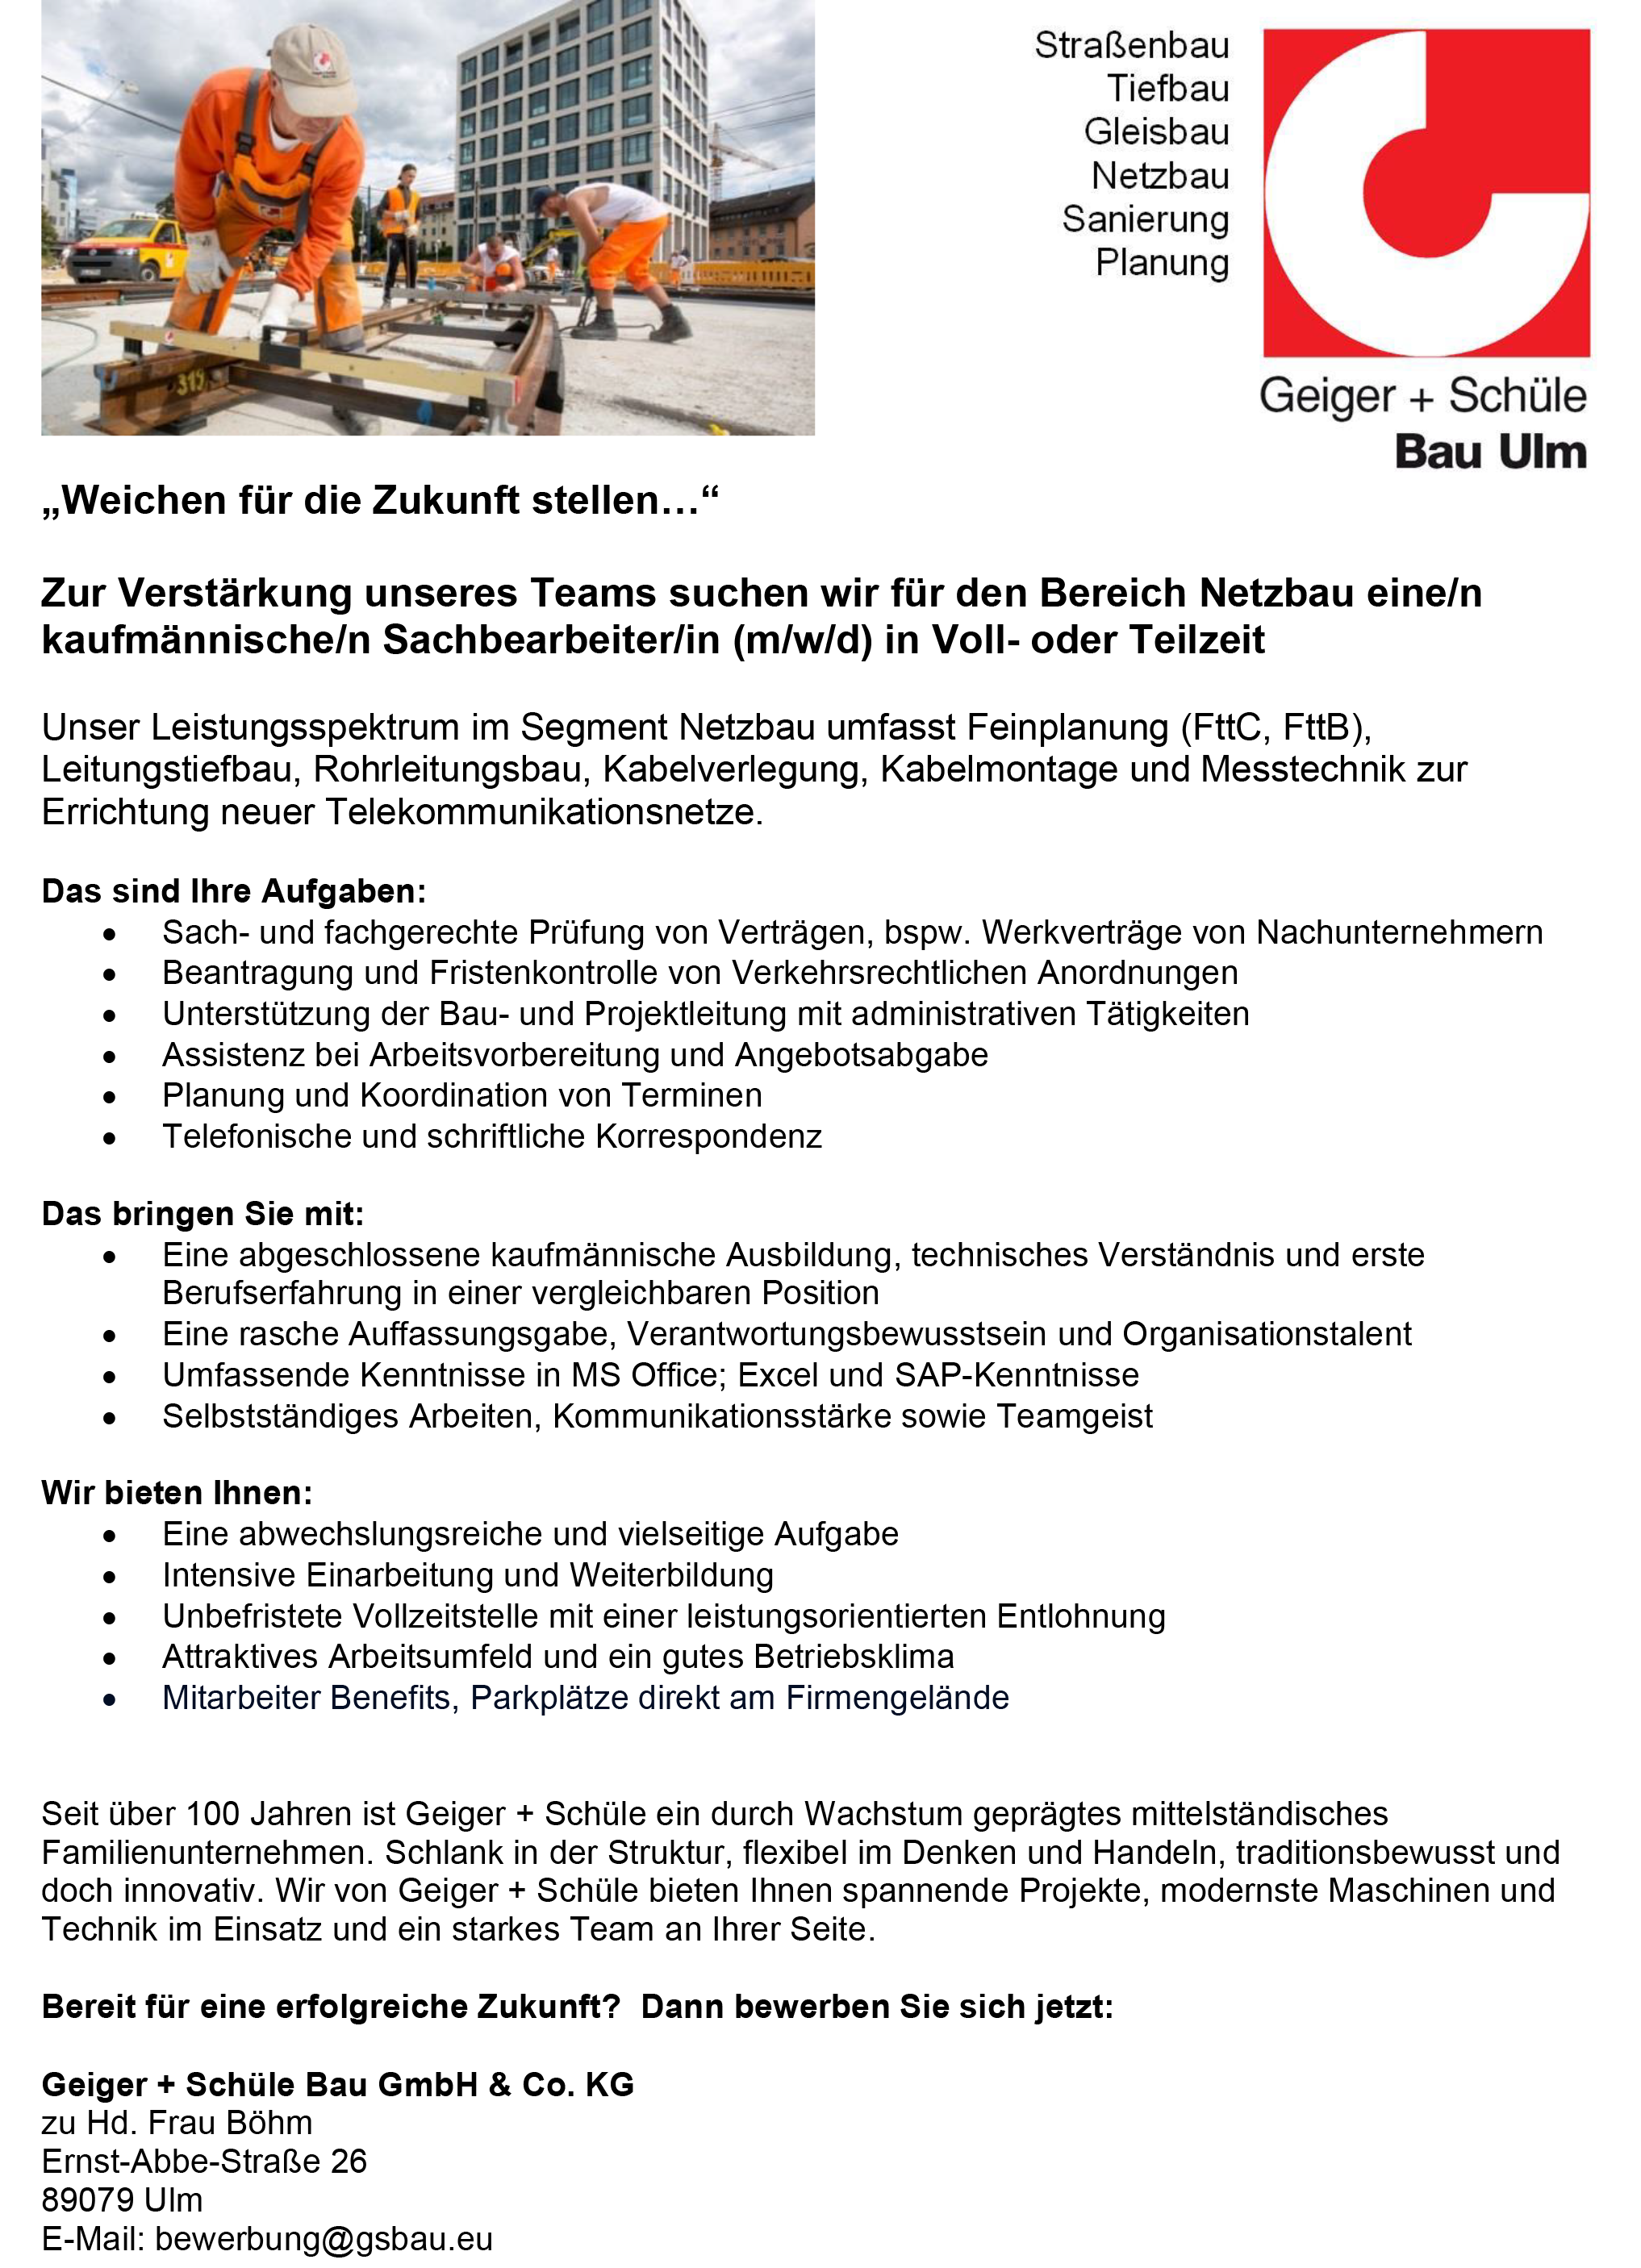 Geiger + Schüle Bau GmbH & Co. KG